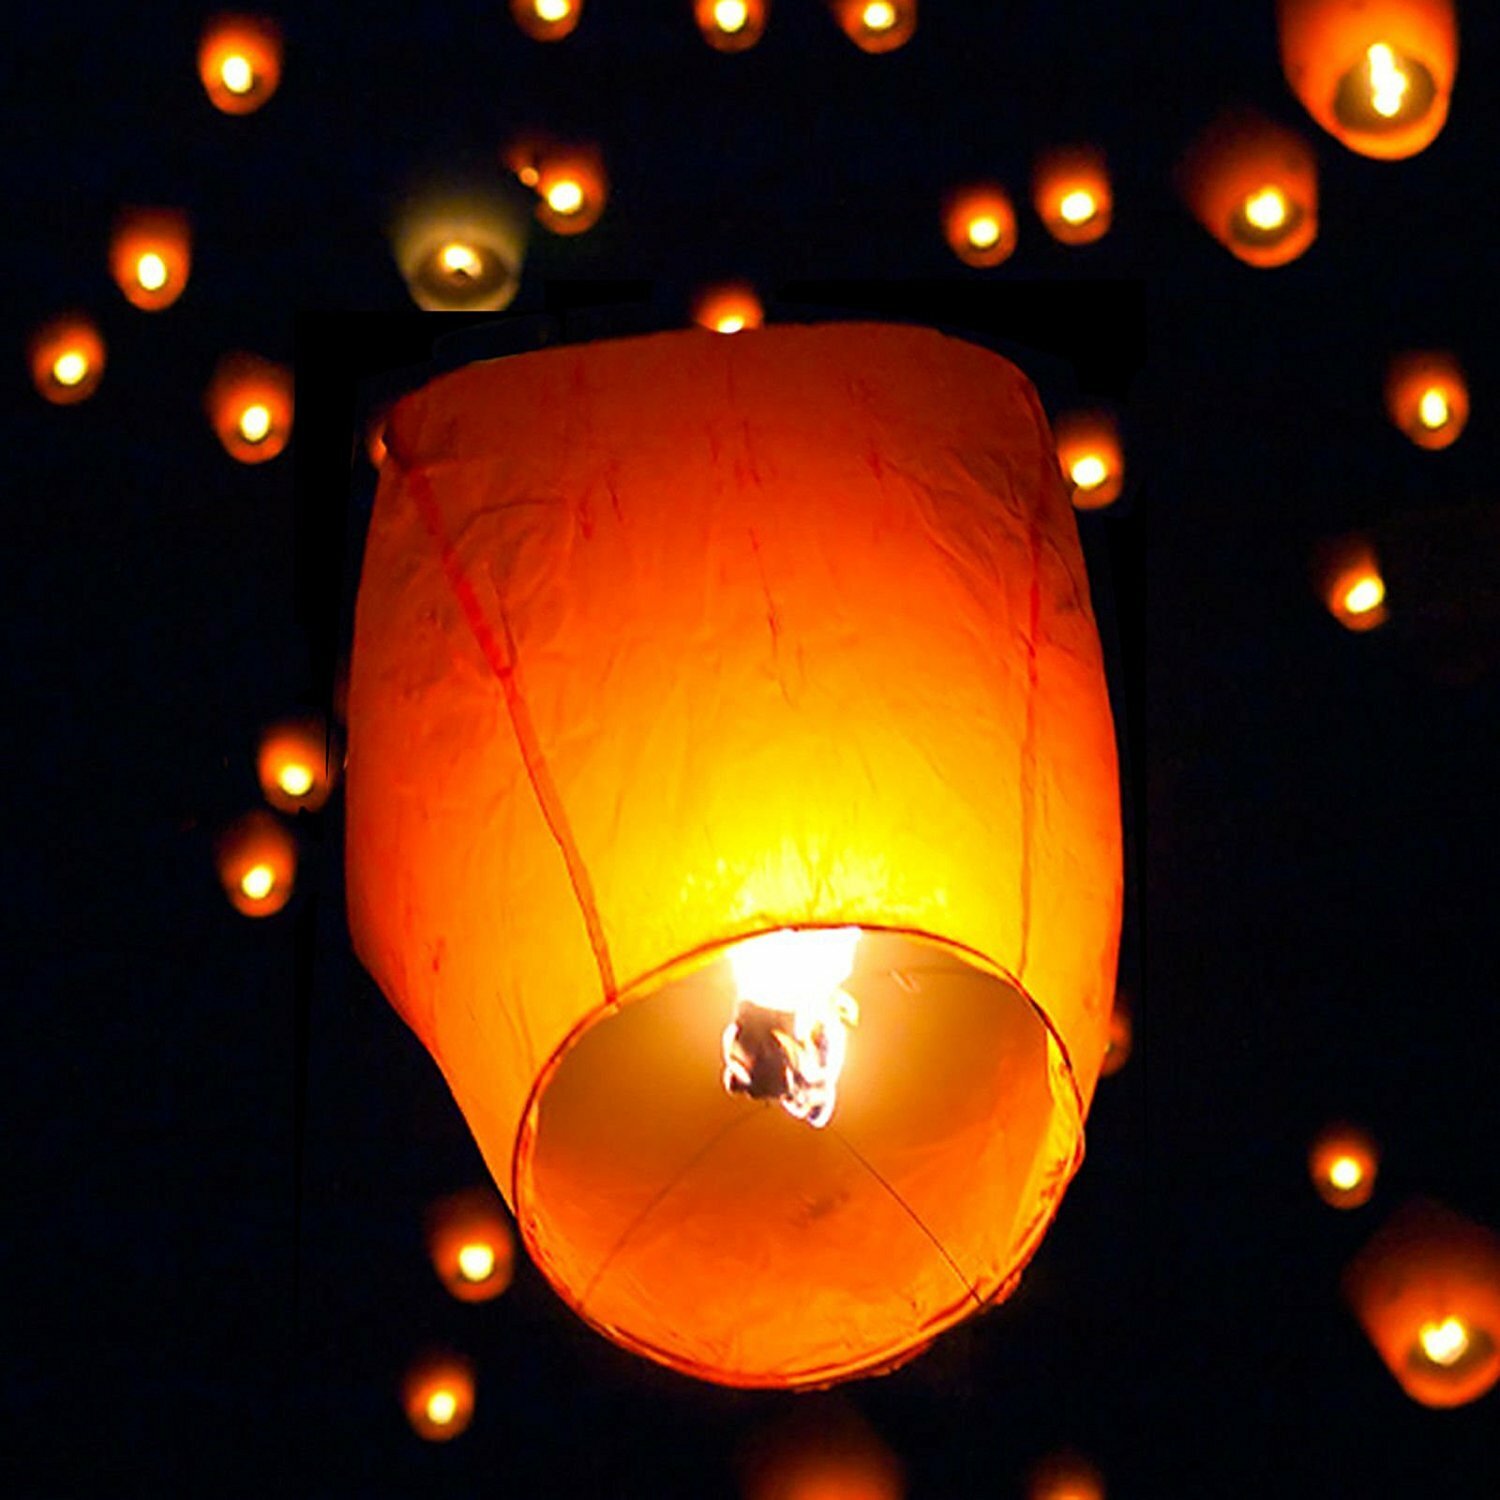 e-Joy Chinese Flying Wishing Paper Lantern & Reviews | Wayfair